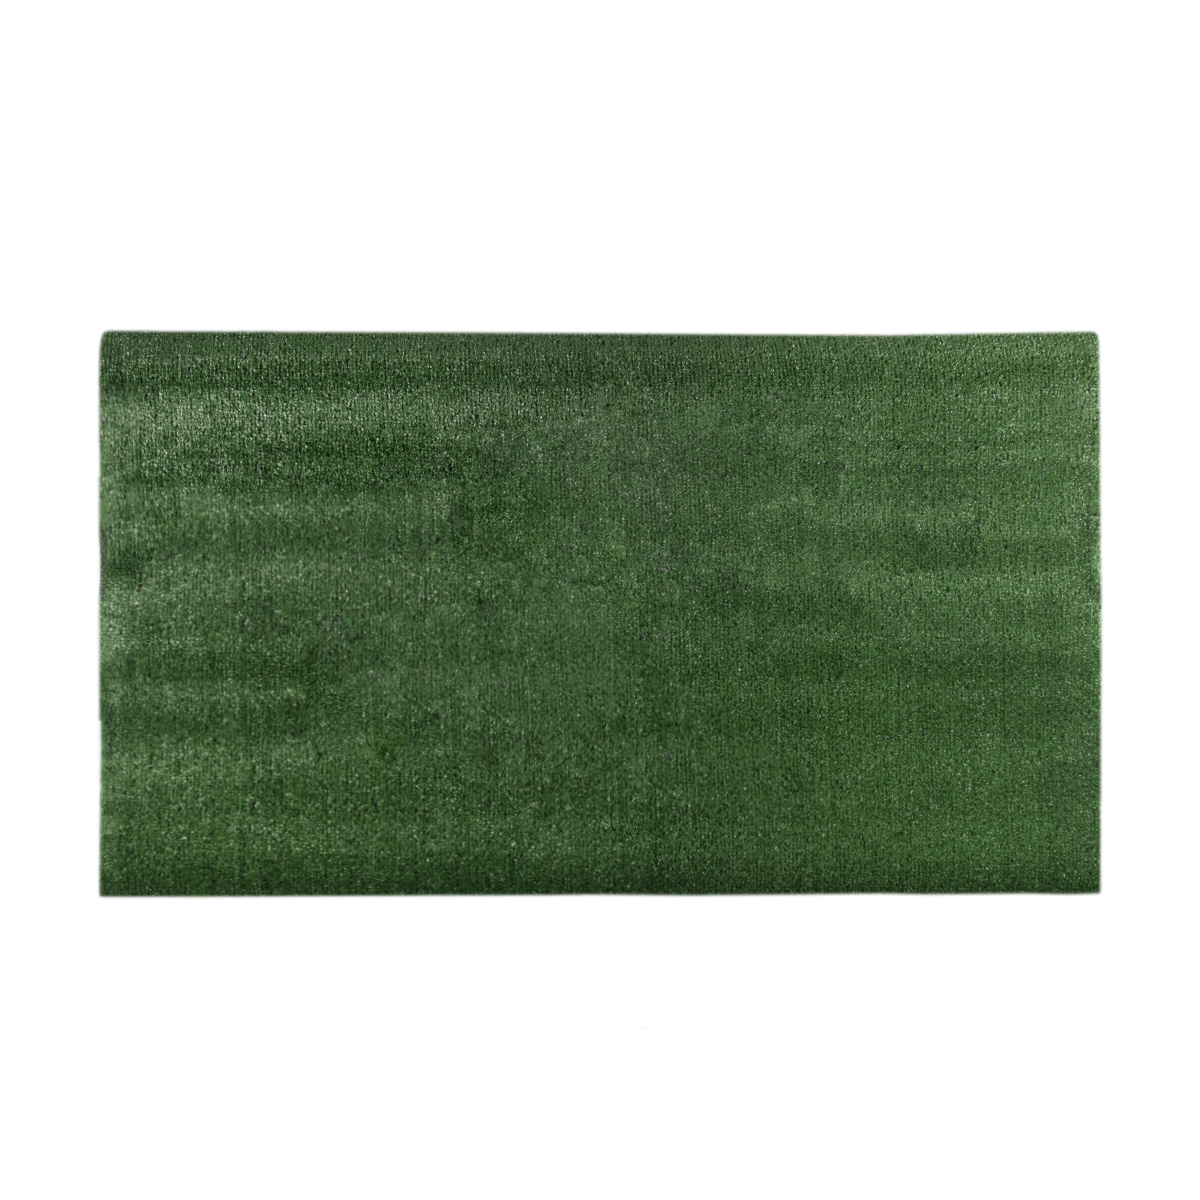 фото Искусственная трава grass komfort, 1 x 2 м, зеленый